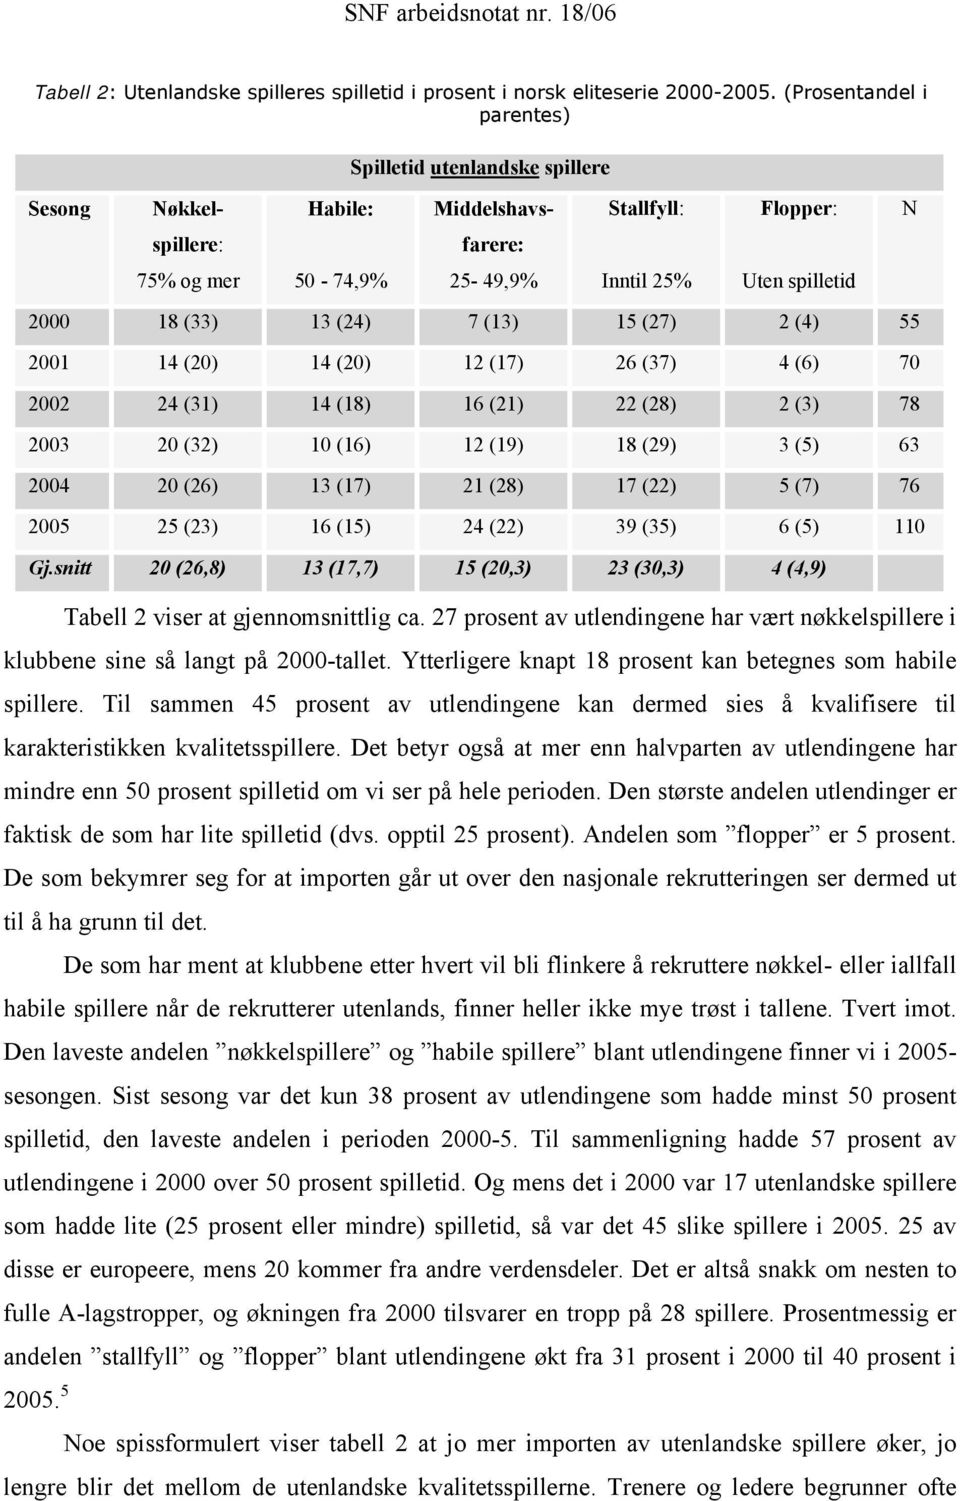 (Prosentandel i parentes) Spilletid utenlandske spillere Sesong Nøkkel- Habile: Middelshavs- Stallfyll: Flopper: N spillere: farere: 75% og mer 50-74,9% 25-49,9% Inntil 25% Uten spilletid 2000 18